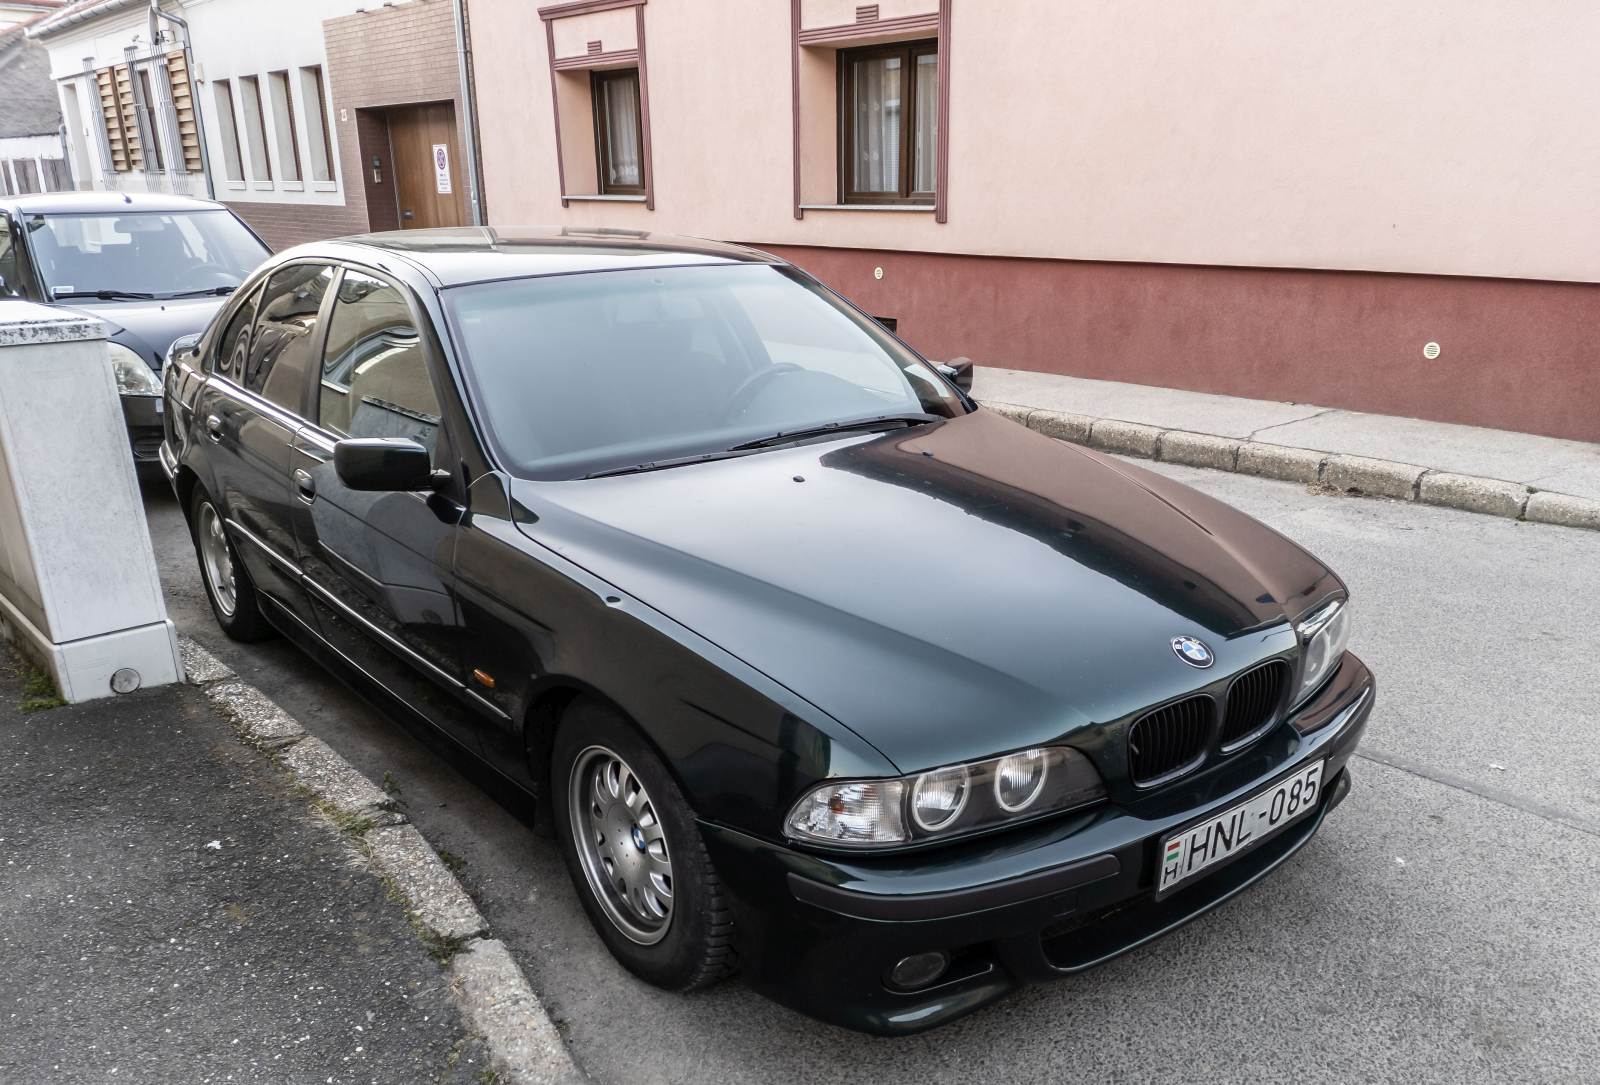 Diesen BMW 5er E39 habe ich in März, 2022 aufgenommen.